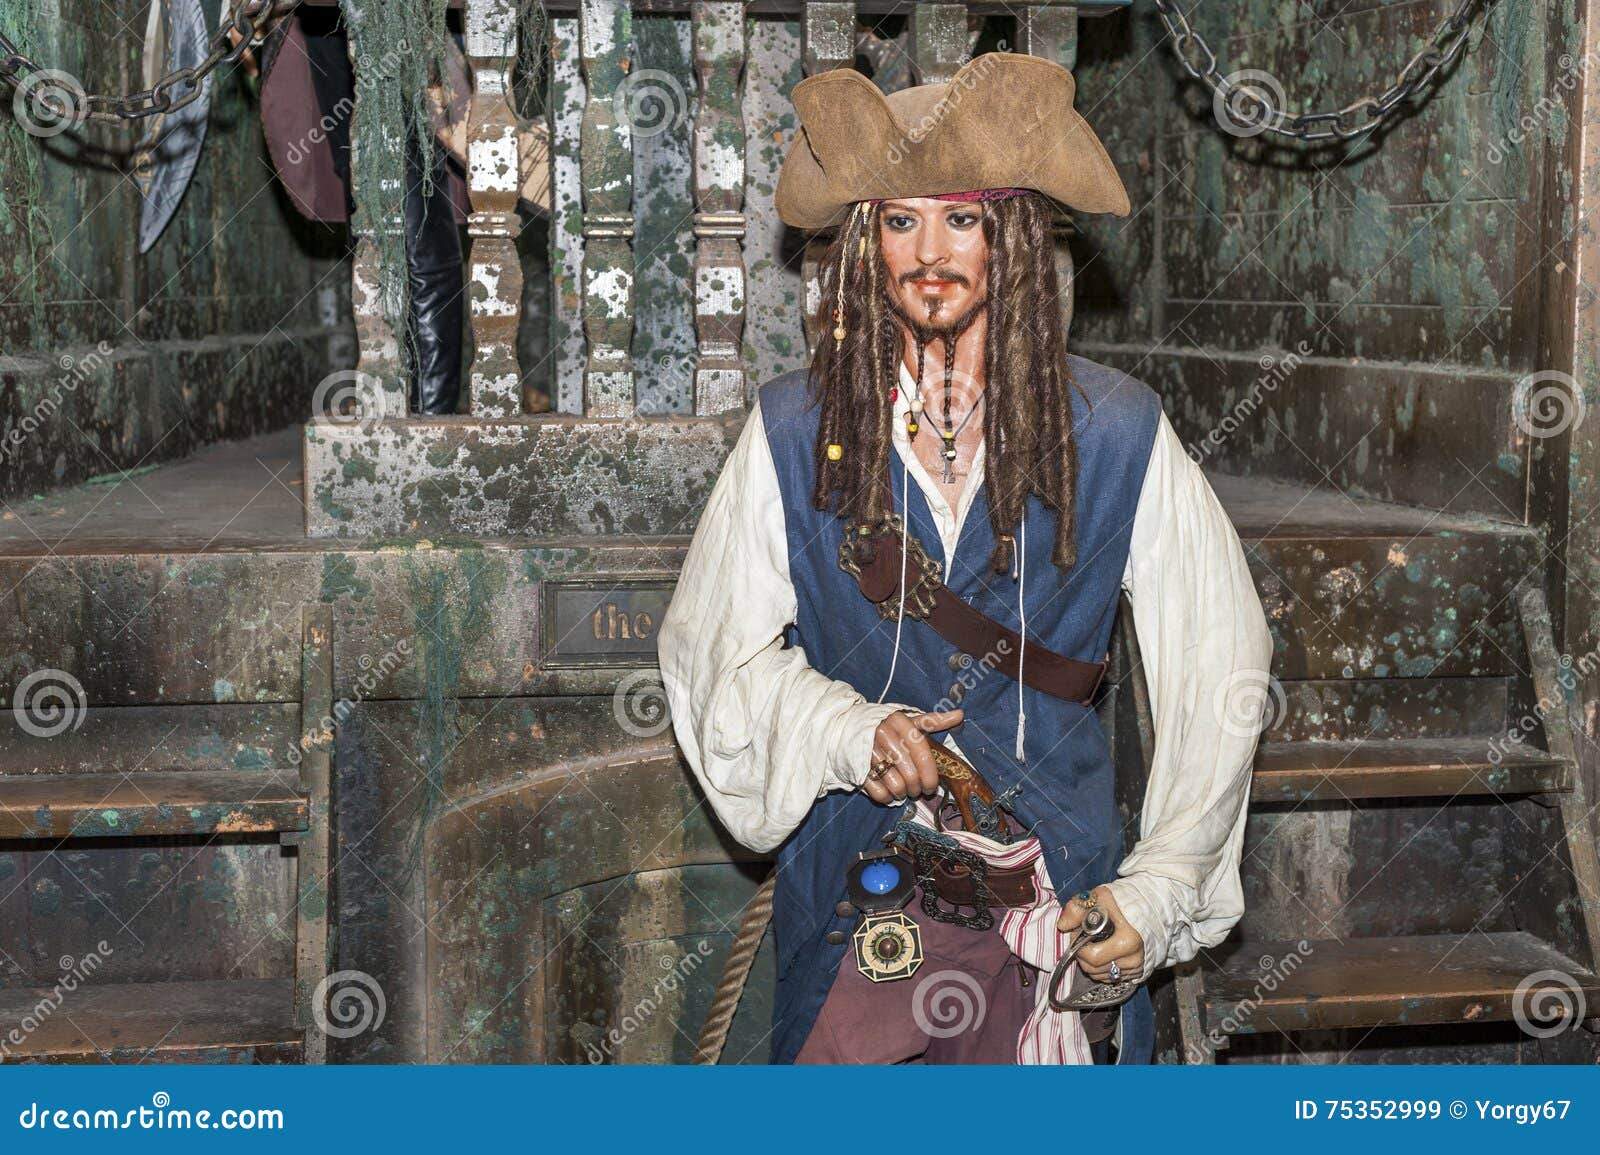 Kwik achter vergeetachtig Jack Sparrow redactionele stock afbeelding. Image of hollywood - 75352999